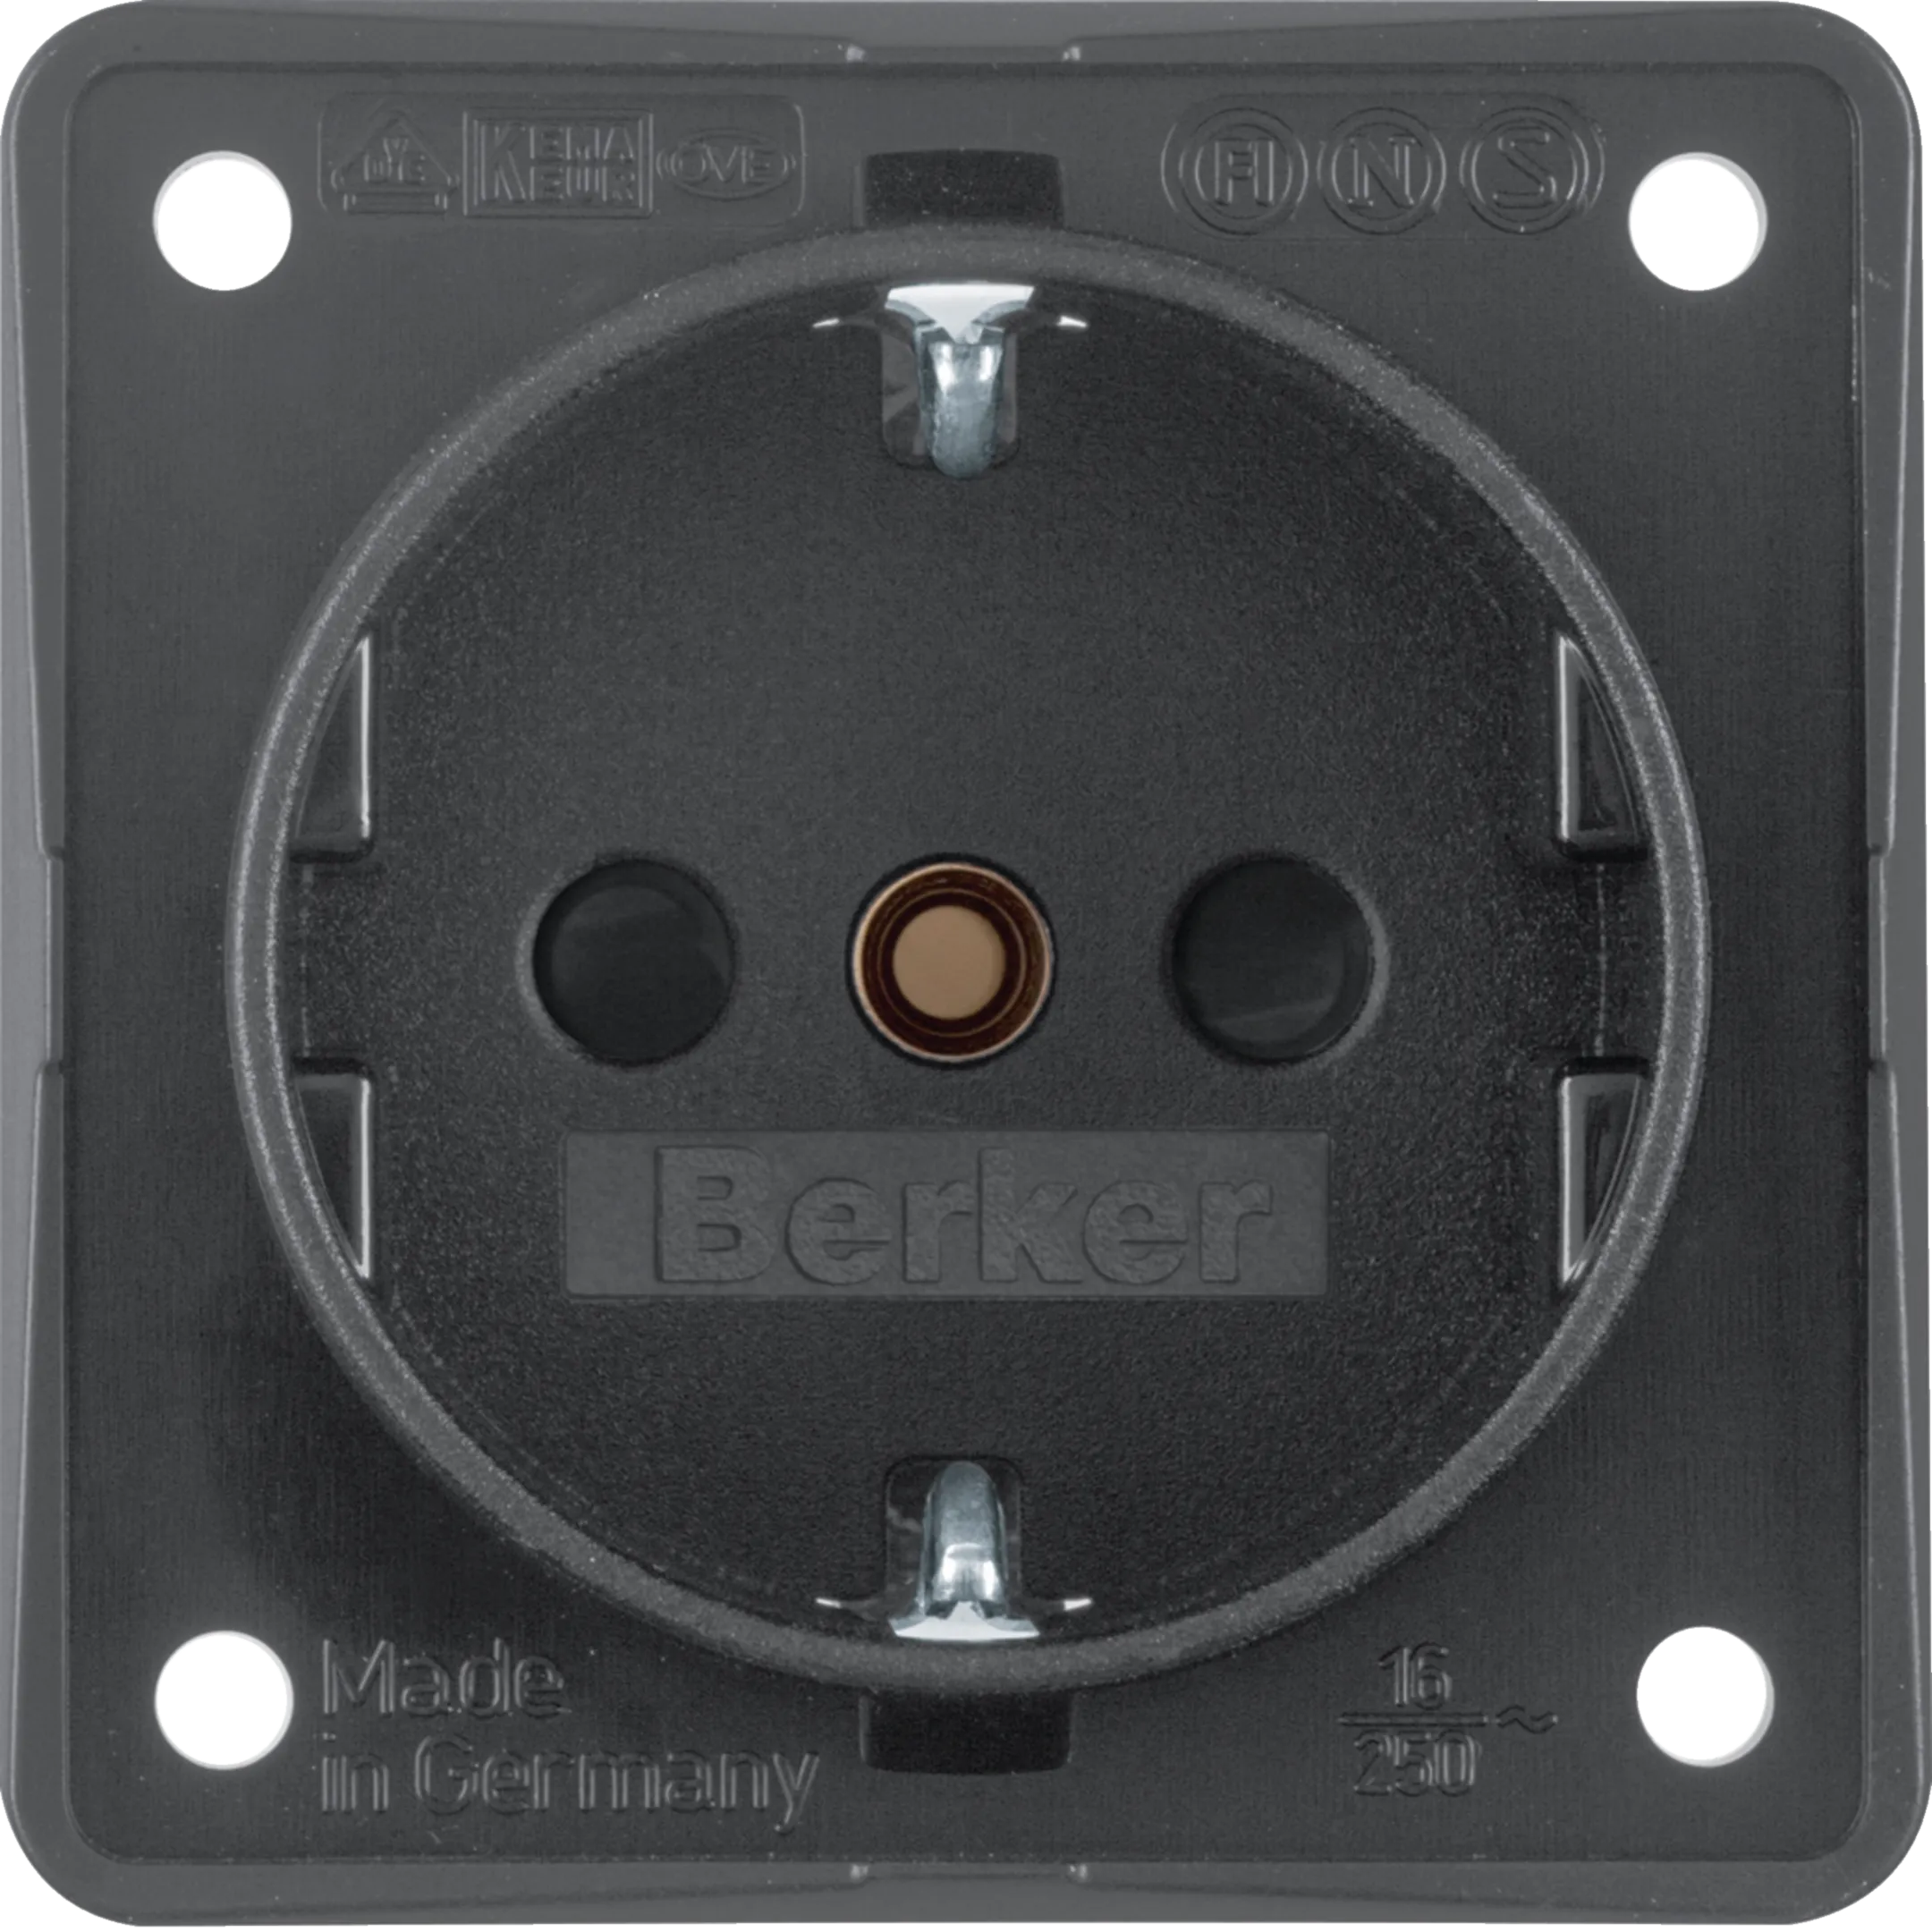 Steckdosen - Berker Integro Berker integro